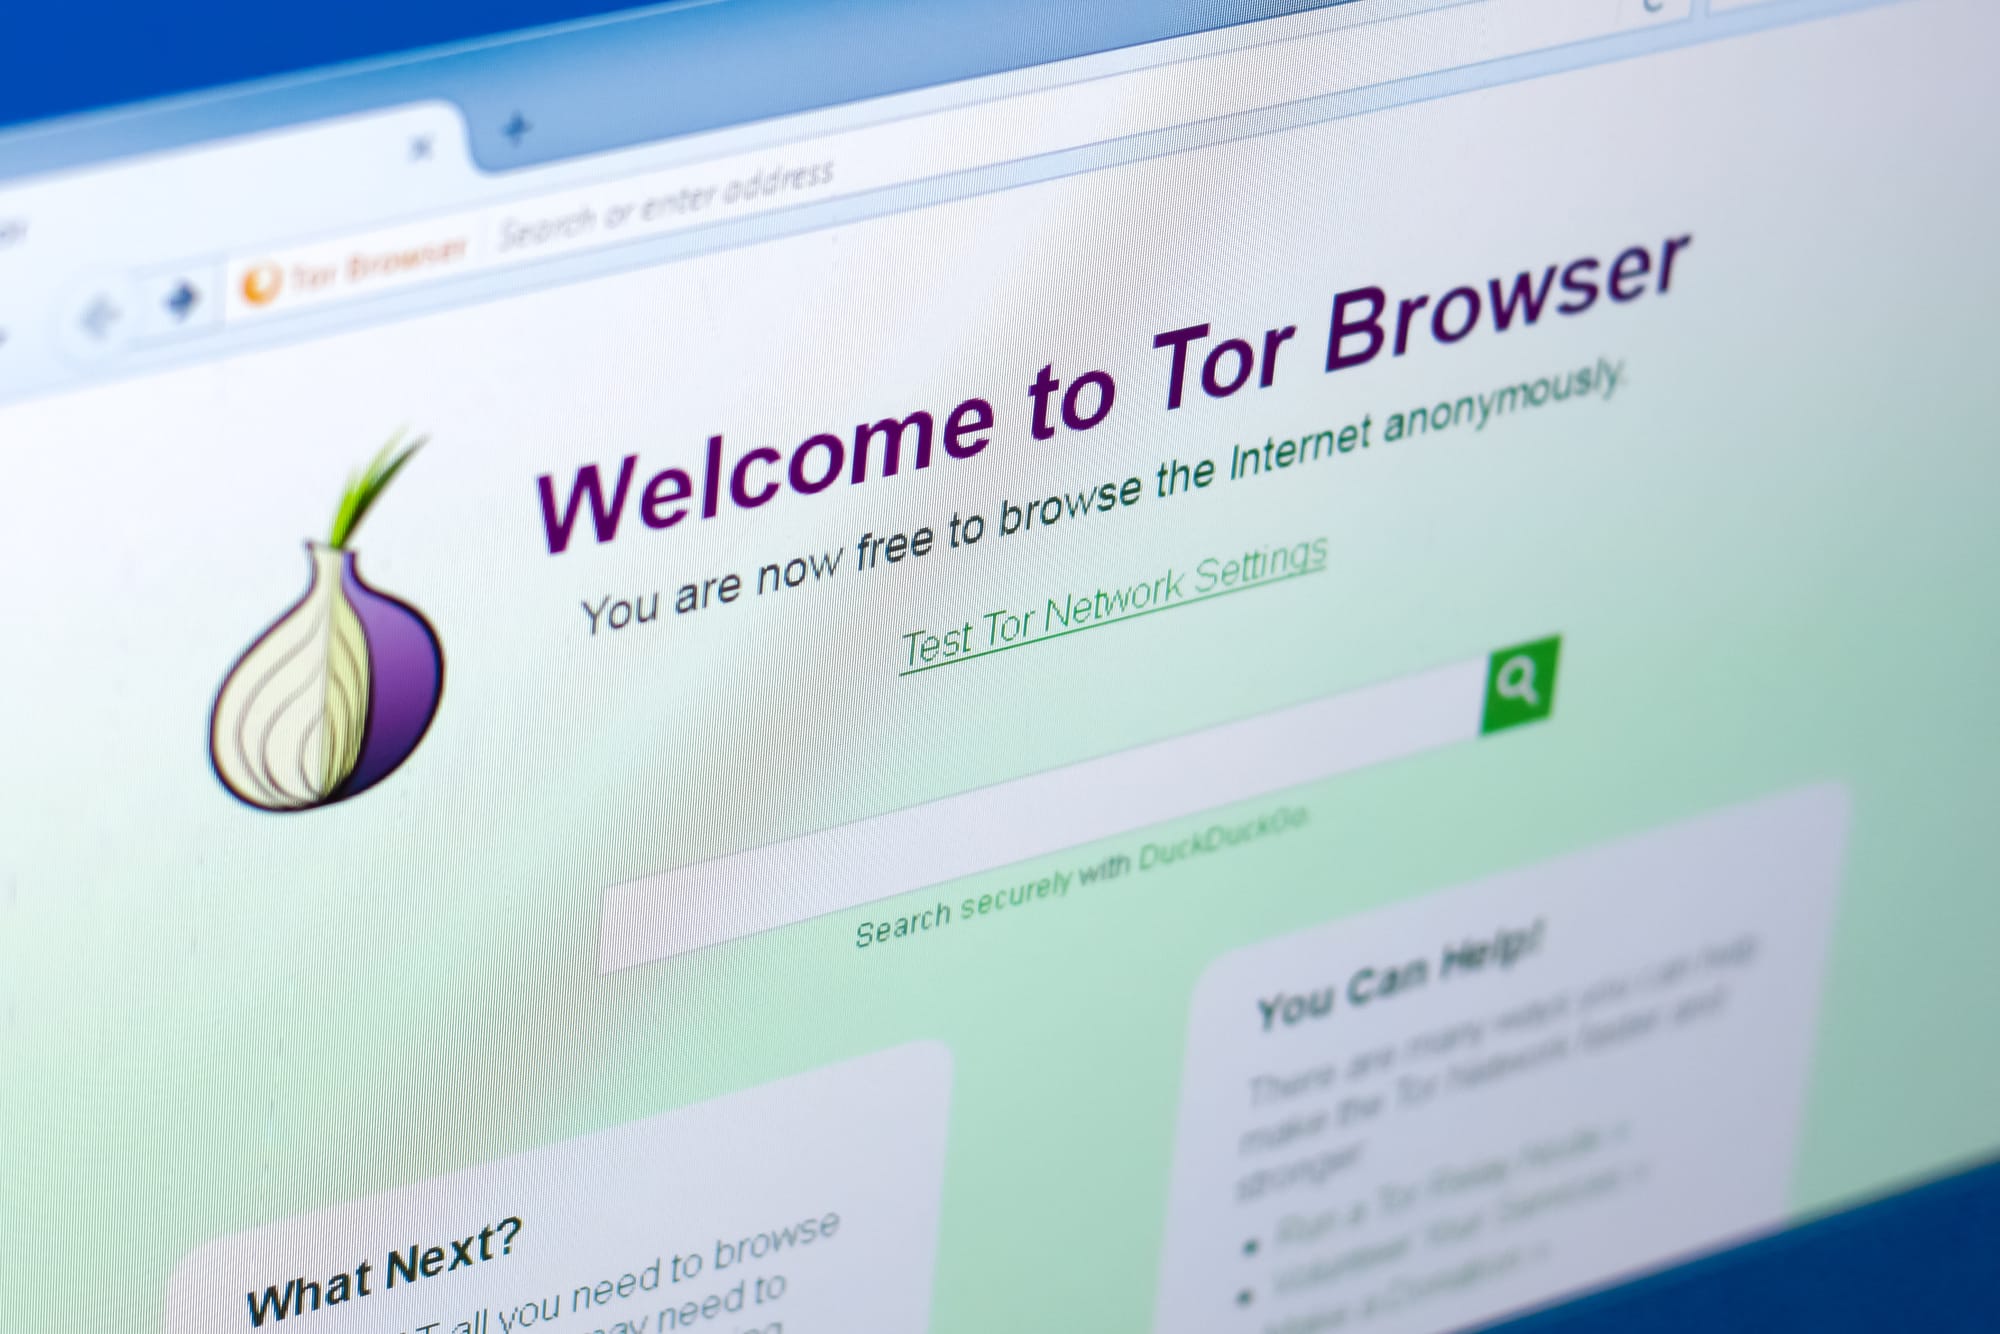 Tor – ブロックシステムとその対策